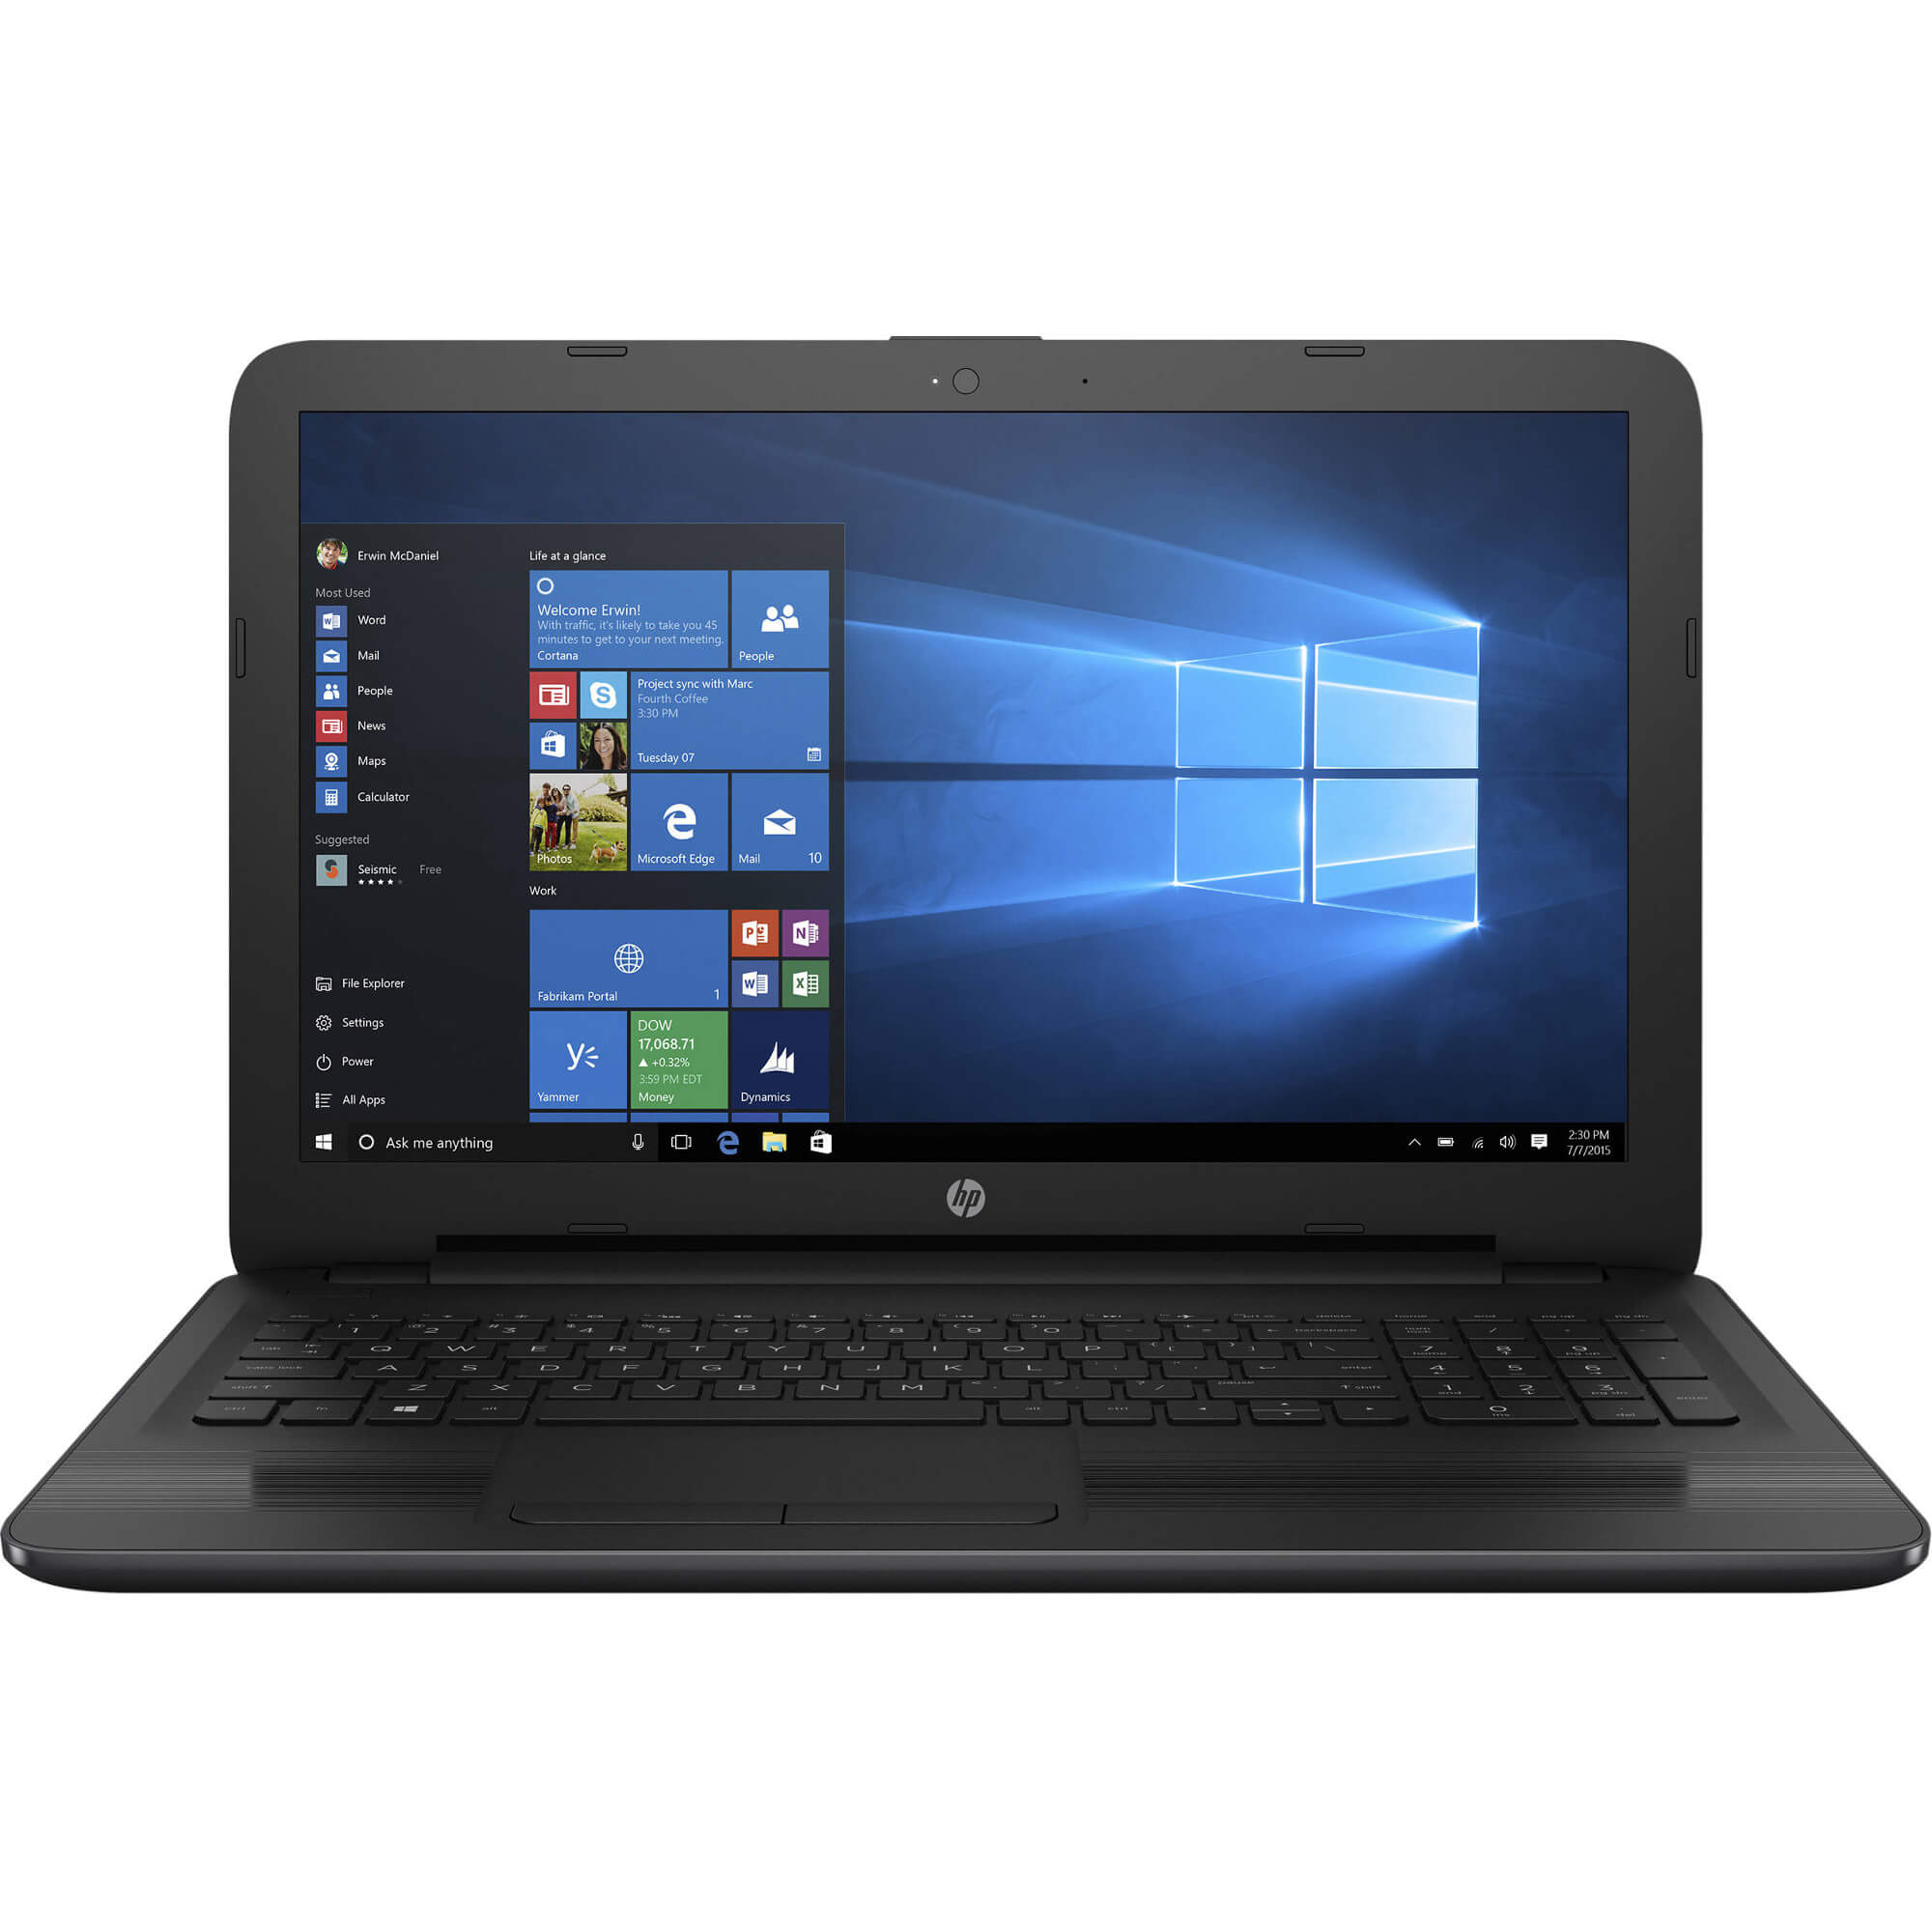  Laptop HP 250 G5, Intel Core i7-6500U, 8GB DDR4, HDD 1TB, Intel HD Graphics, Windows 10 Pro 